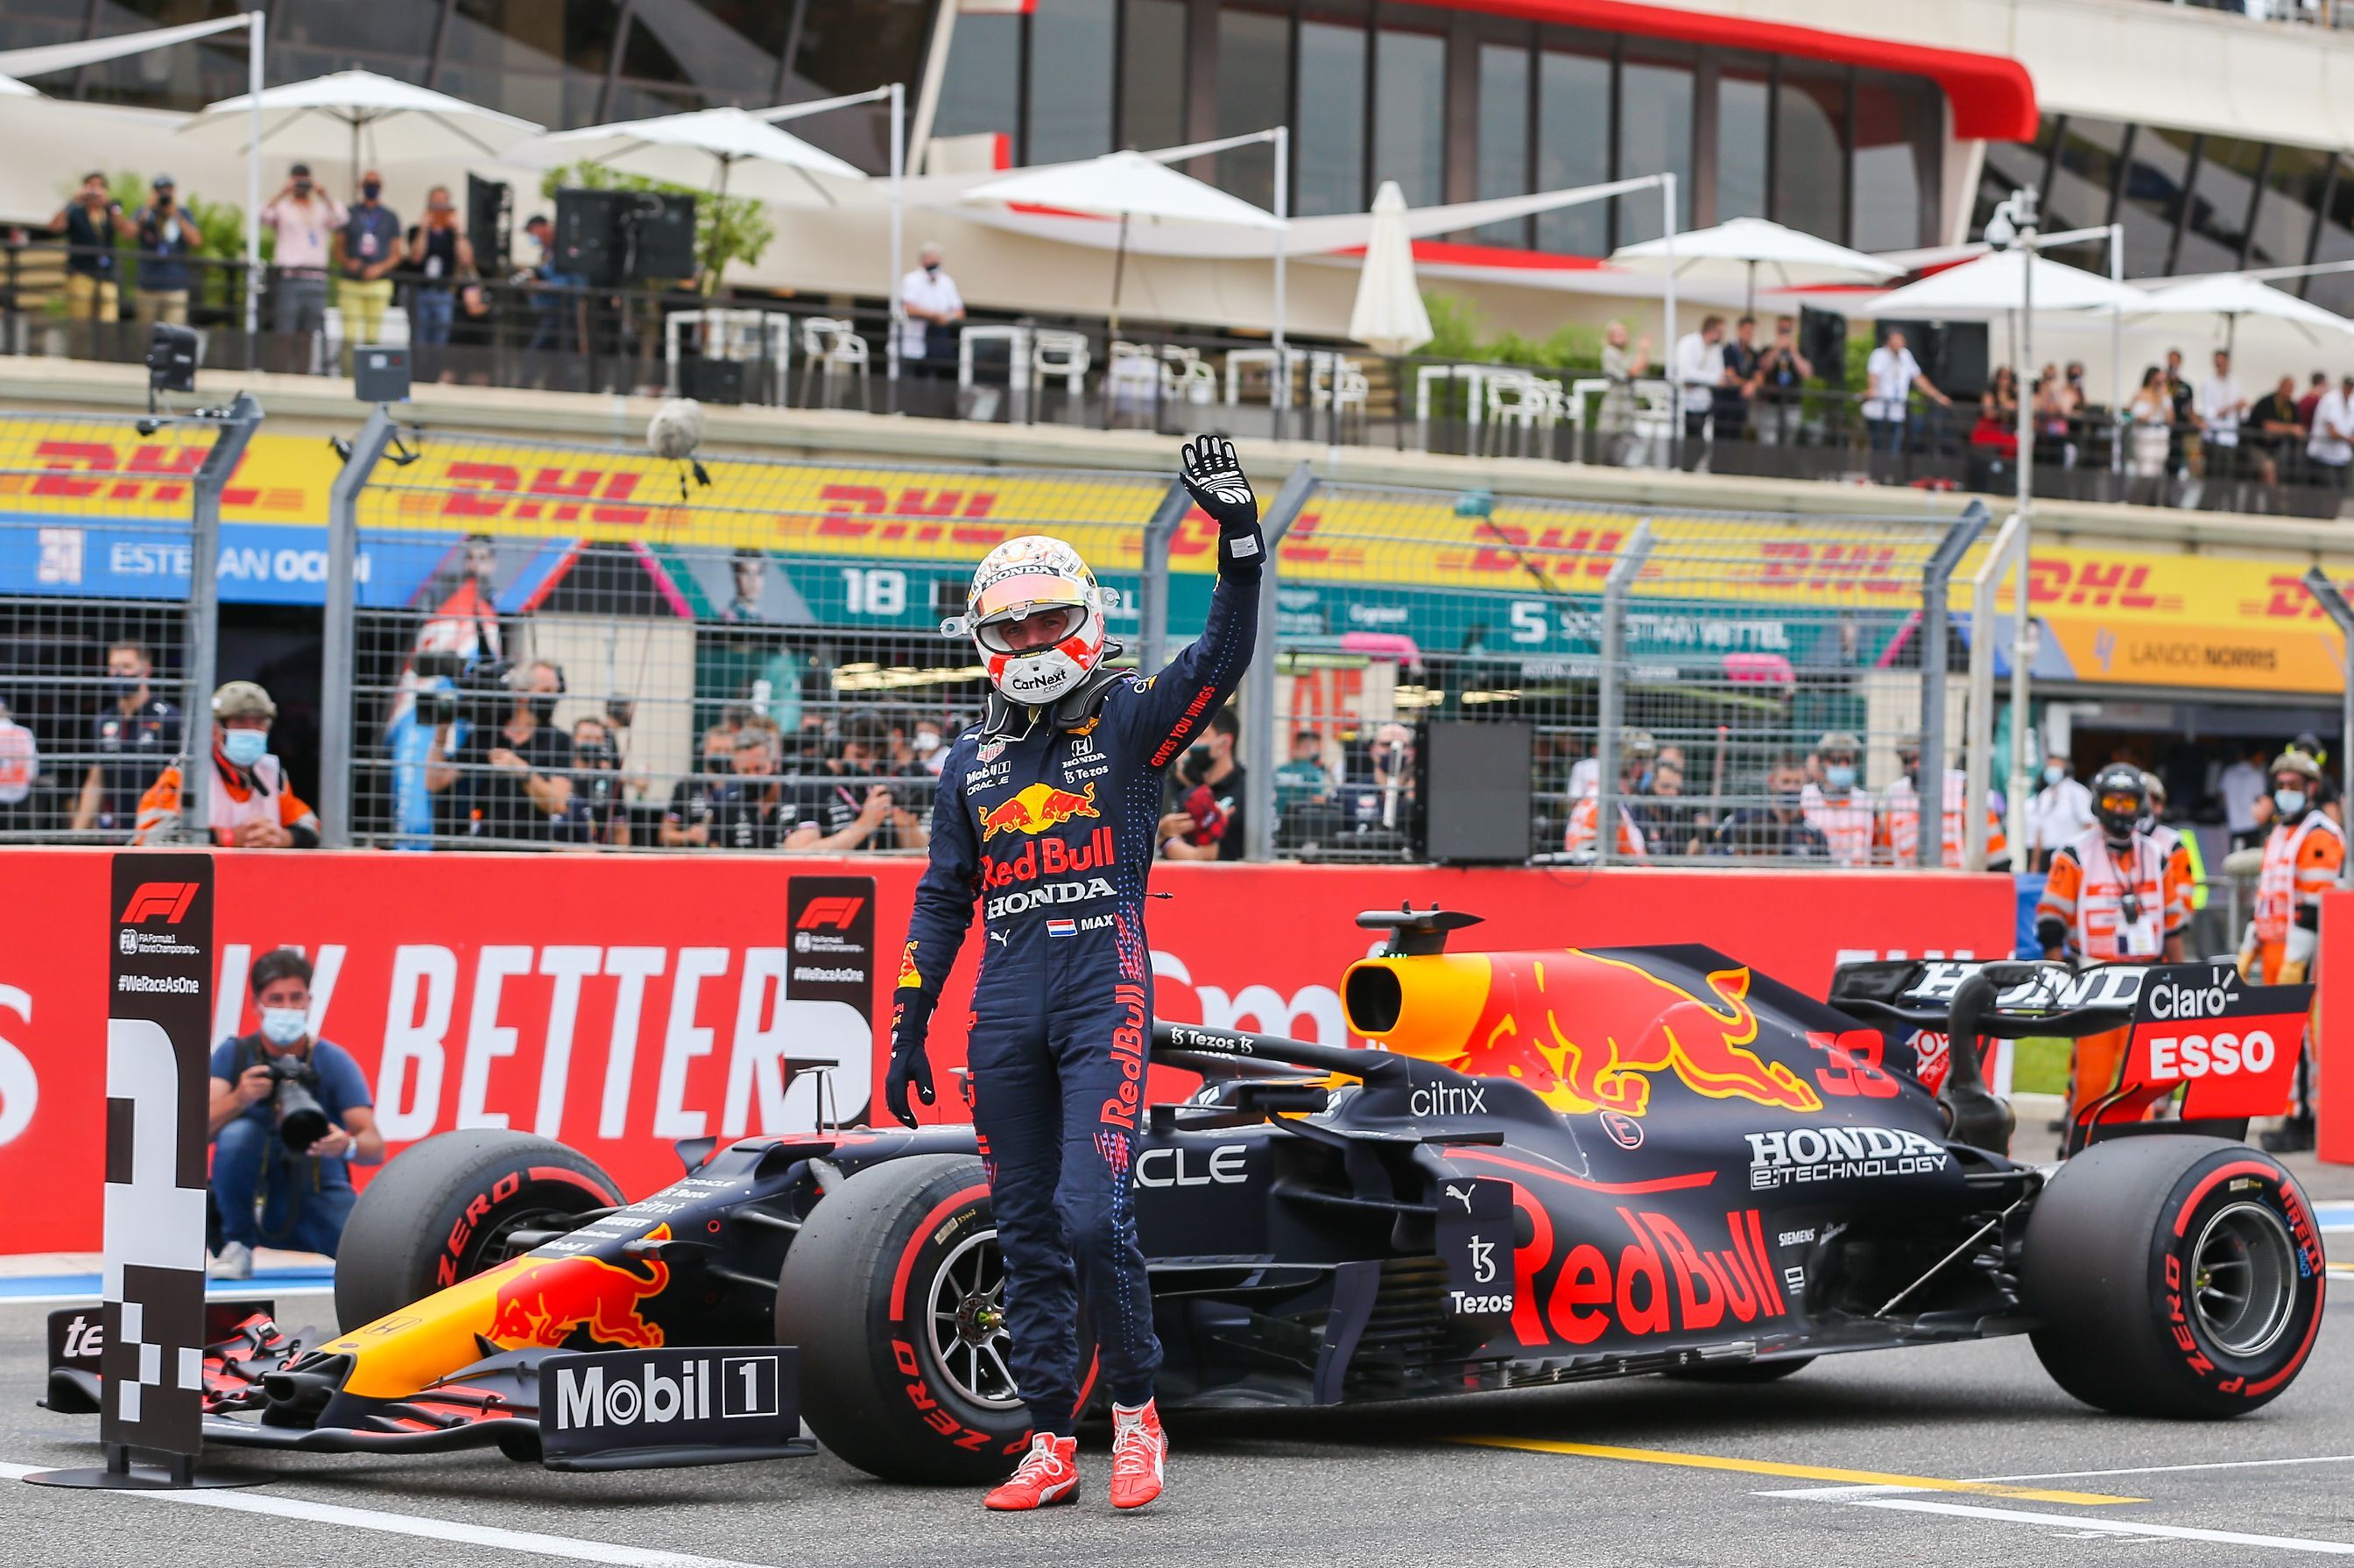 Marele Premiu al Franței, LIVE VIDEO, pe Digi Sport 1. Max Verstappen pleacă din pole position